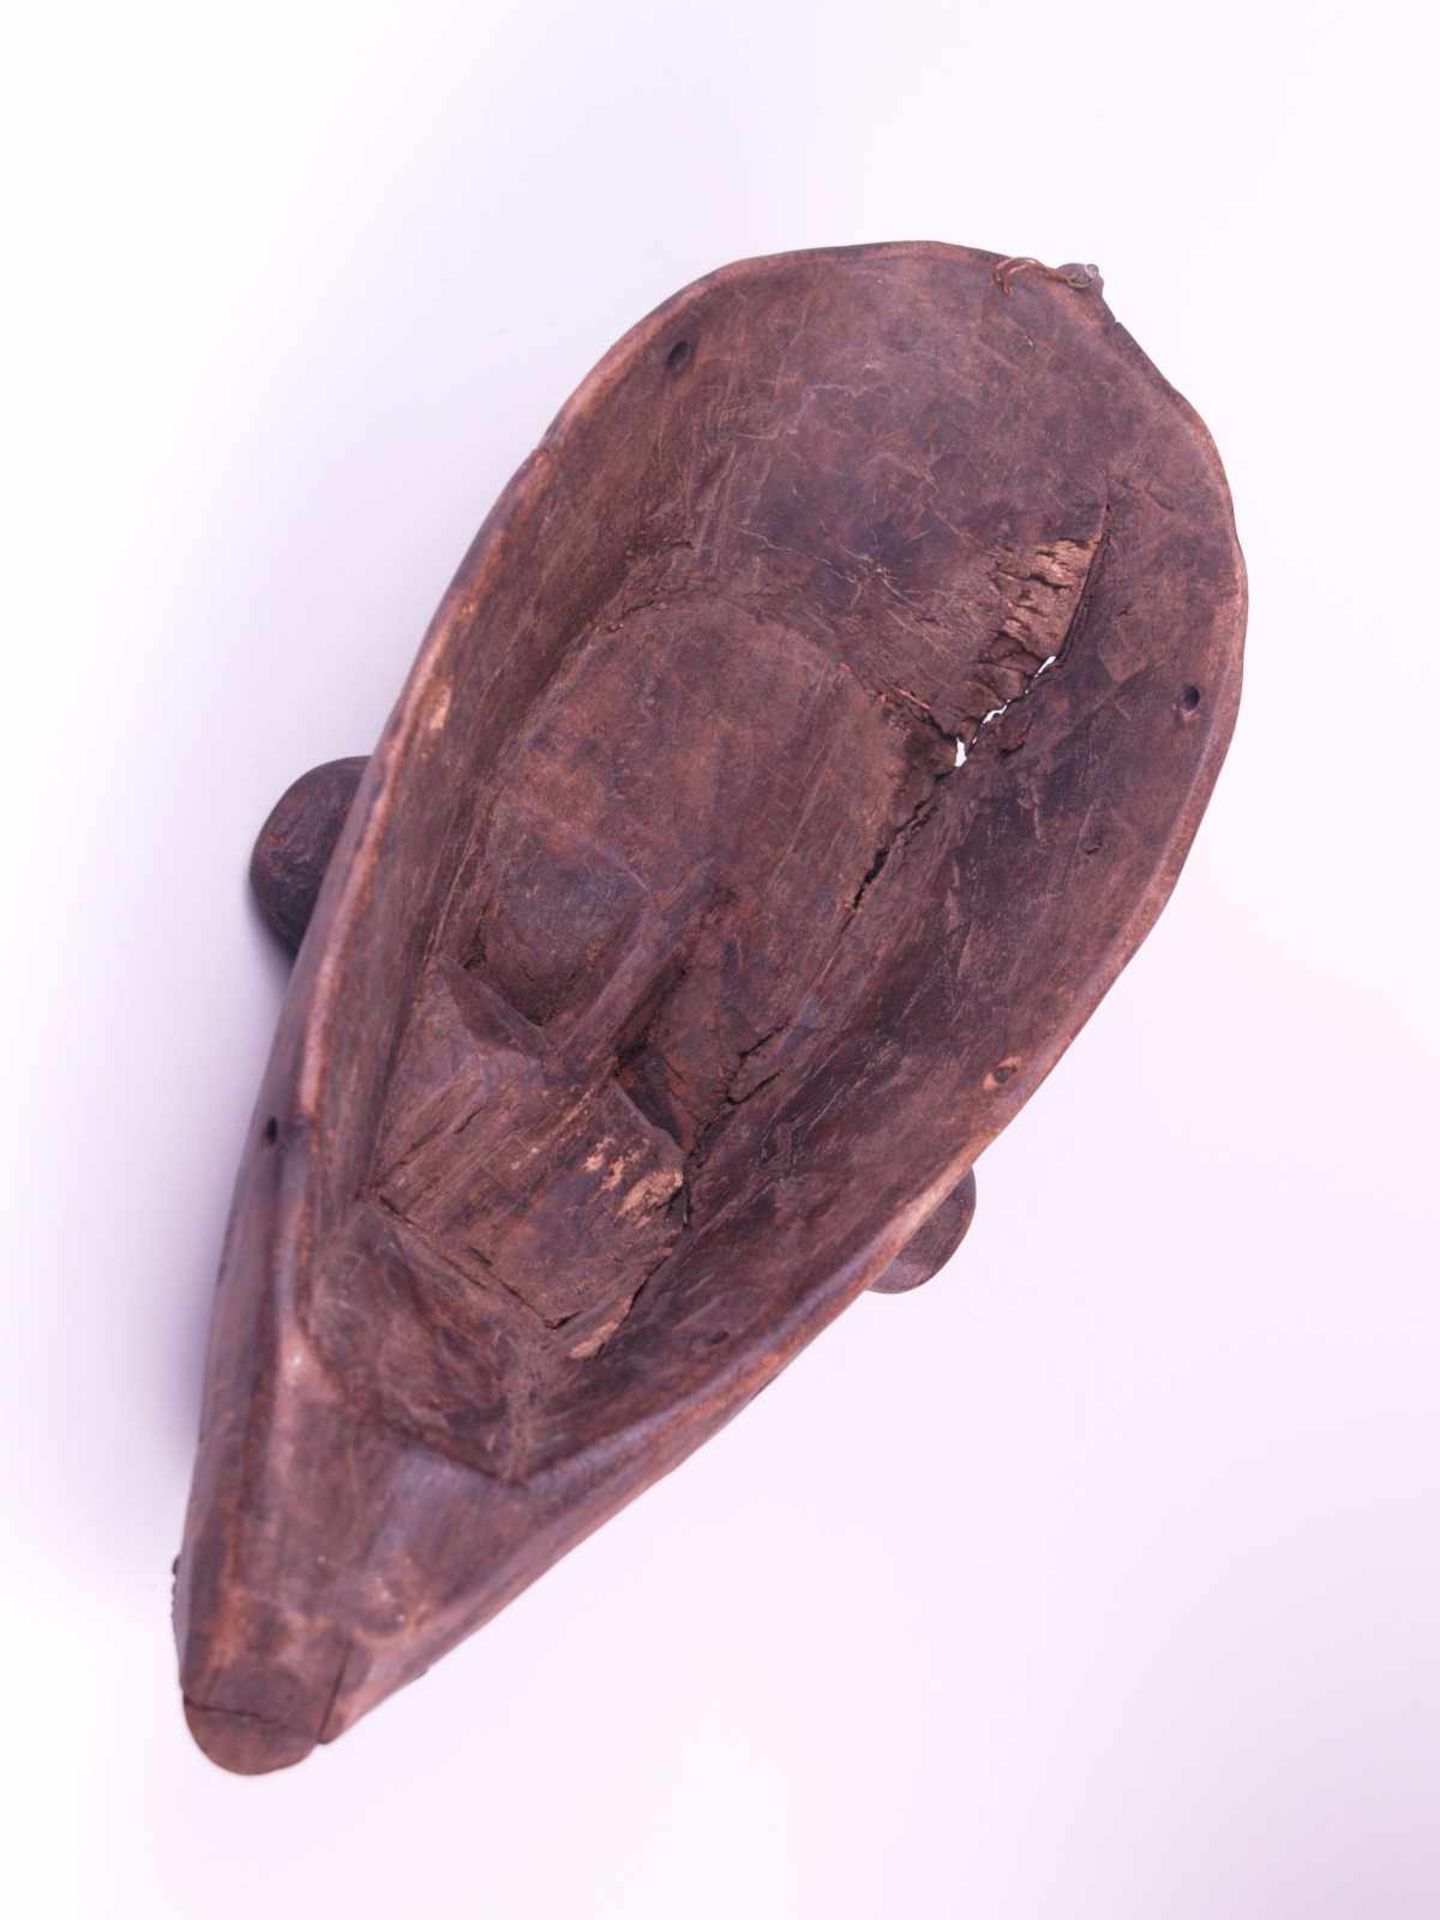 Gesichtsmaske - Mali,Bambara oder Marka, Holz geschnitzt mit Metallbeschlag an Lippen und - Bild 2 aus 4